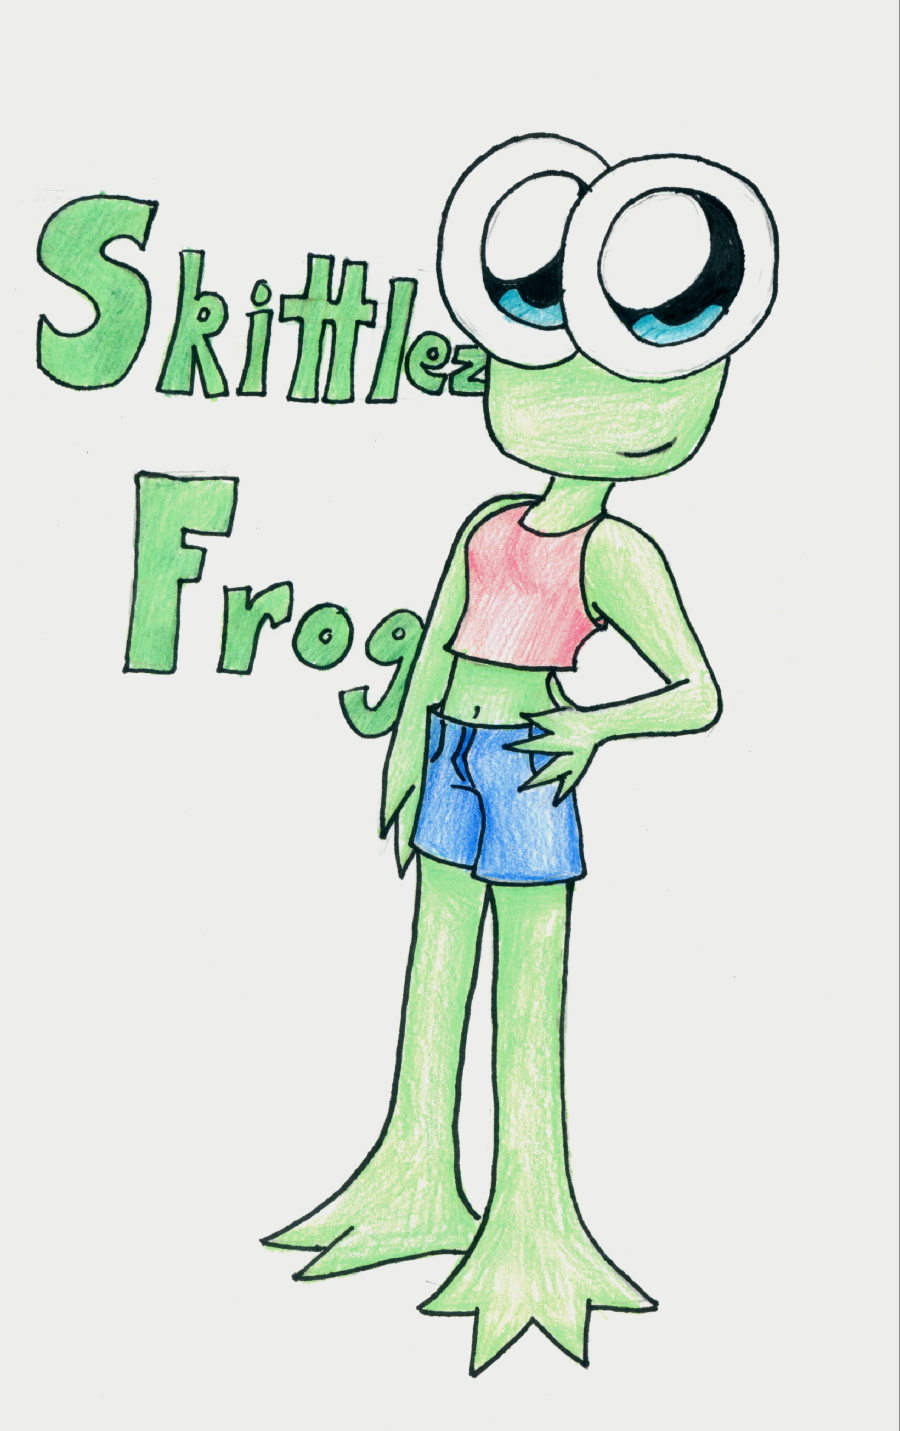 Request for skittlezfrog by Indigo_Foxx